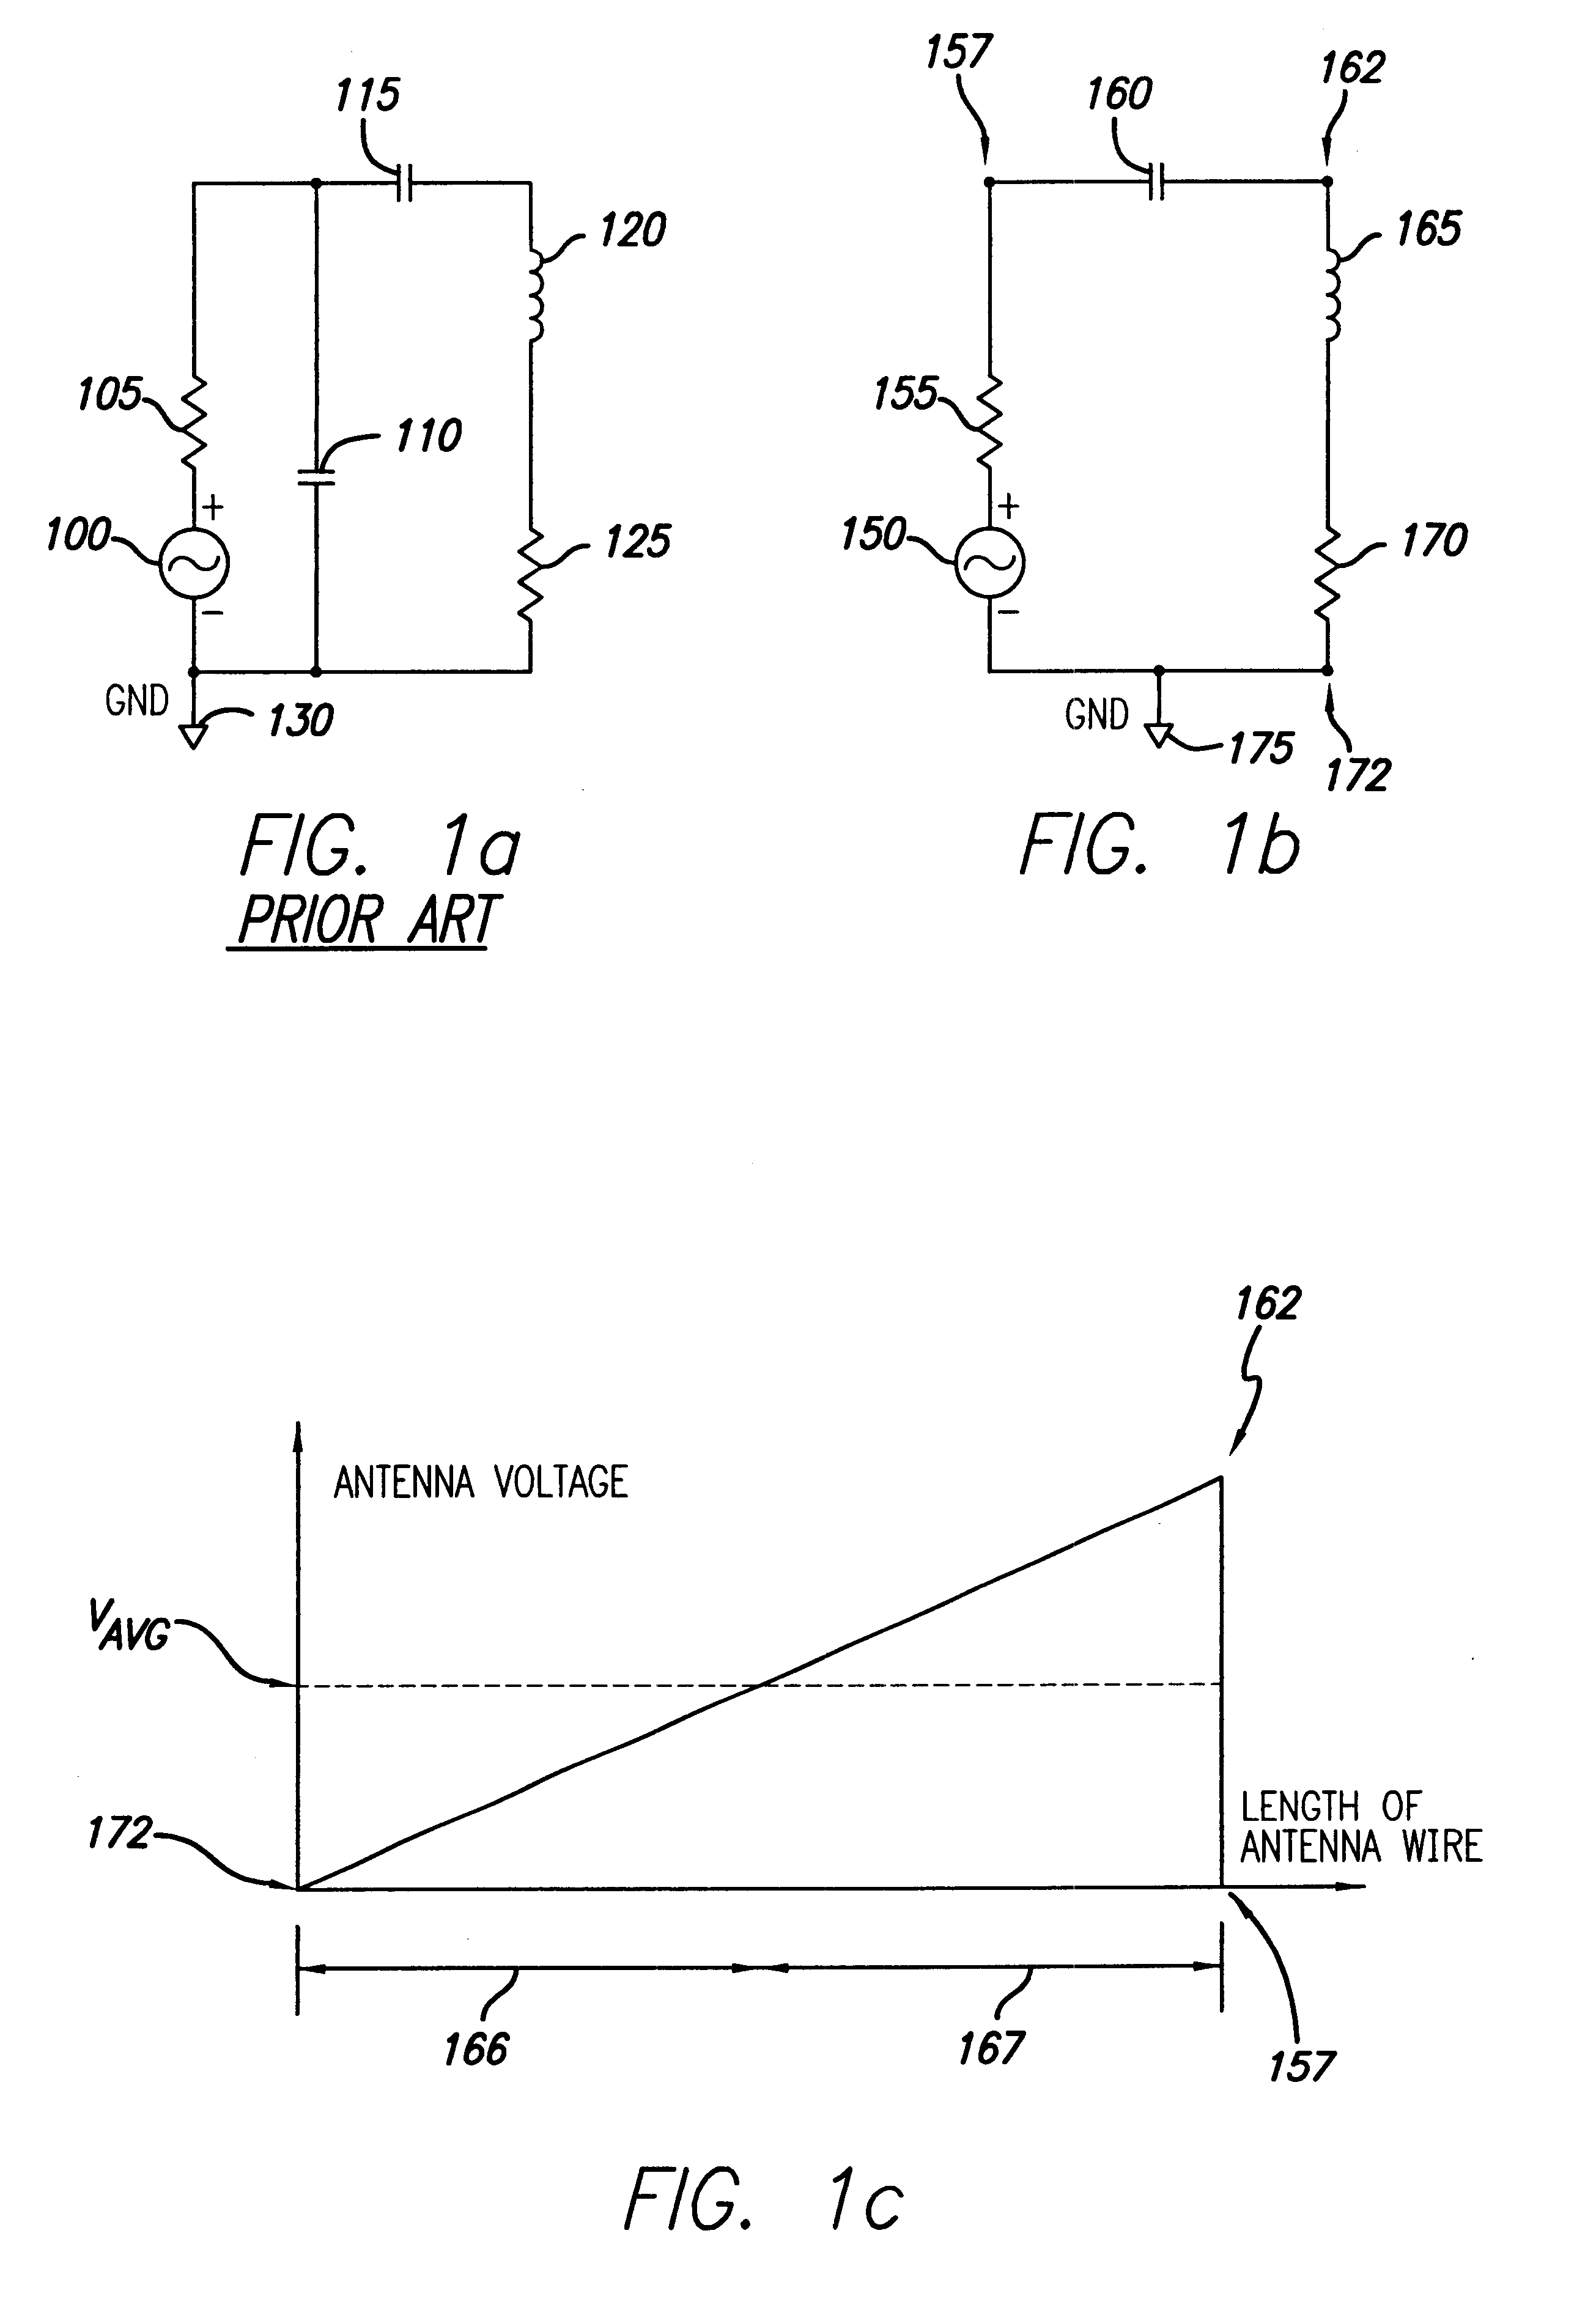 Loop antenna parasitics reduction technique